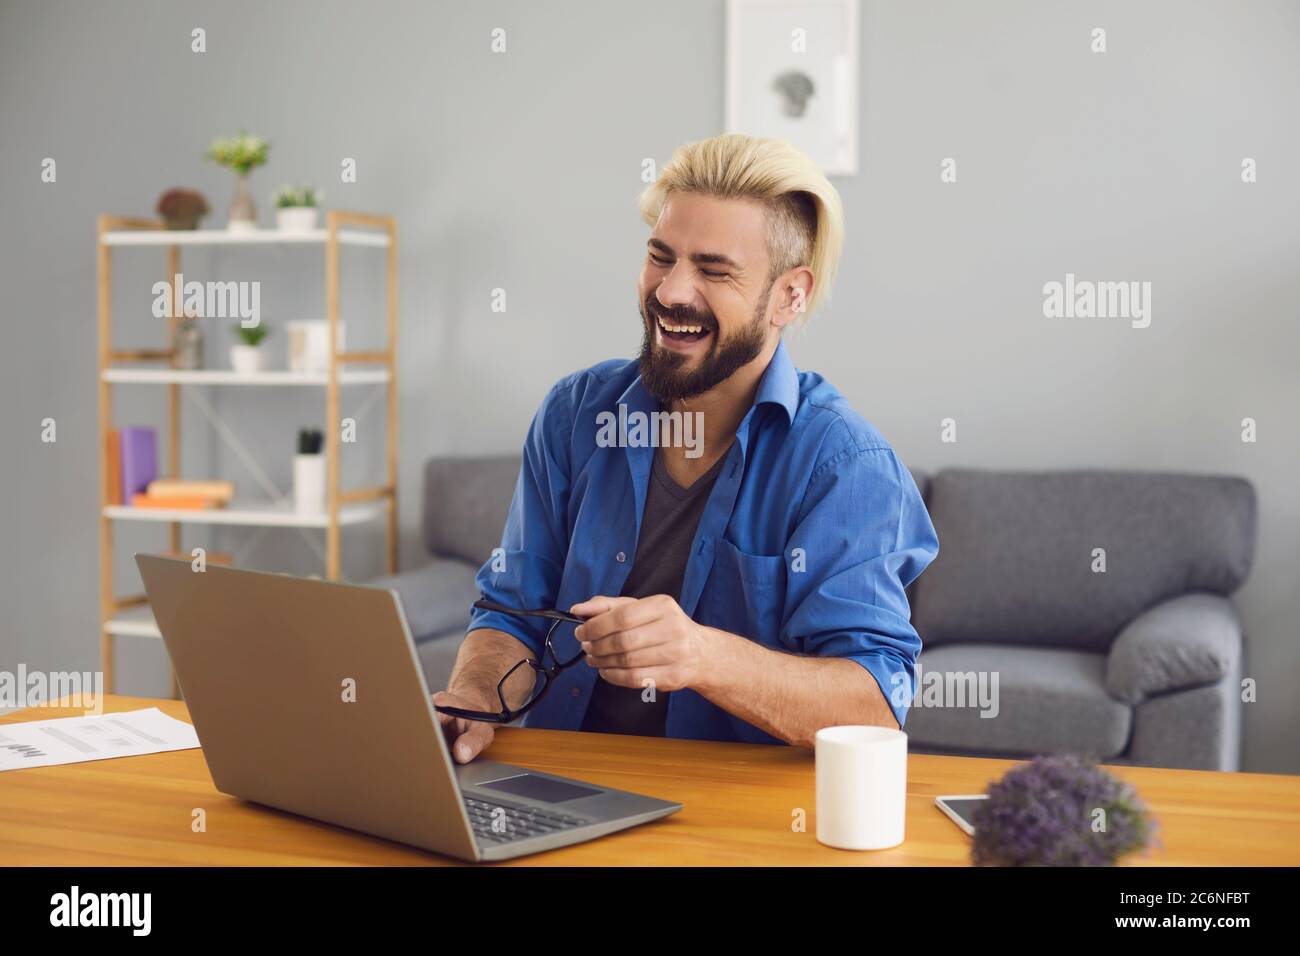 El hombre libre riendo usando el portátil vide conferencia de chat en casa. Foto de stock